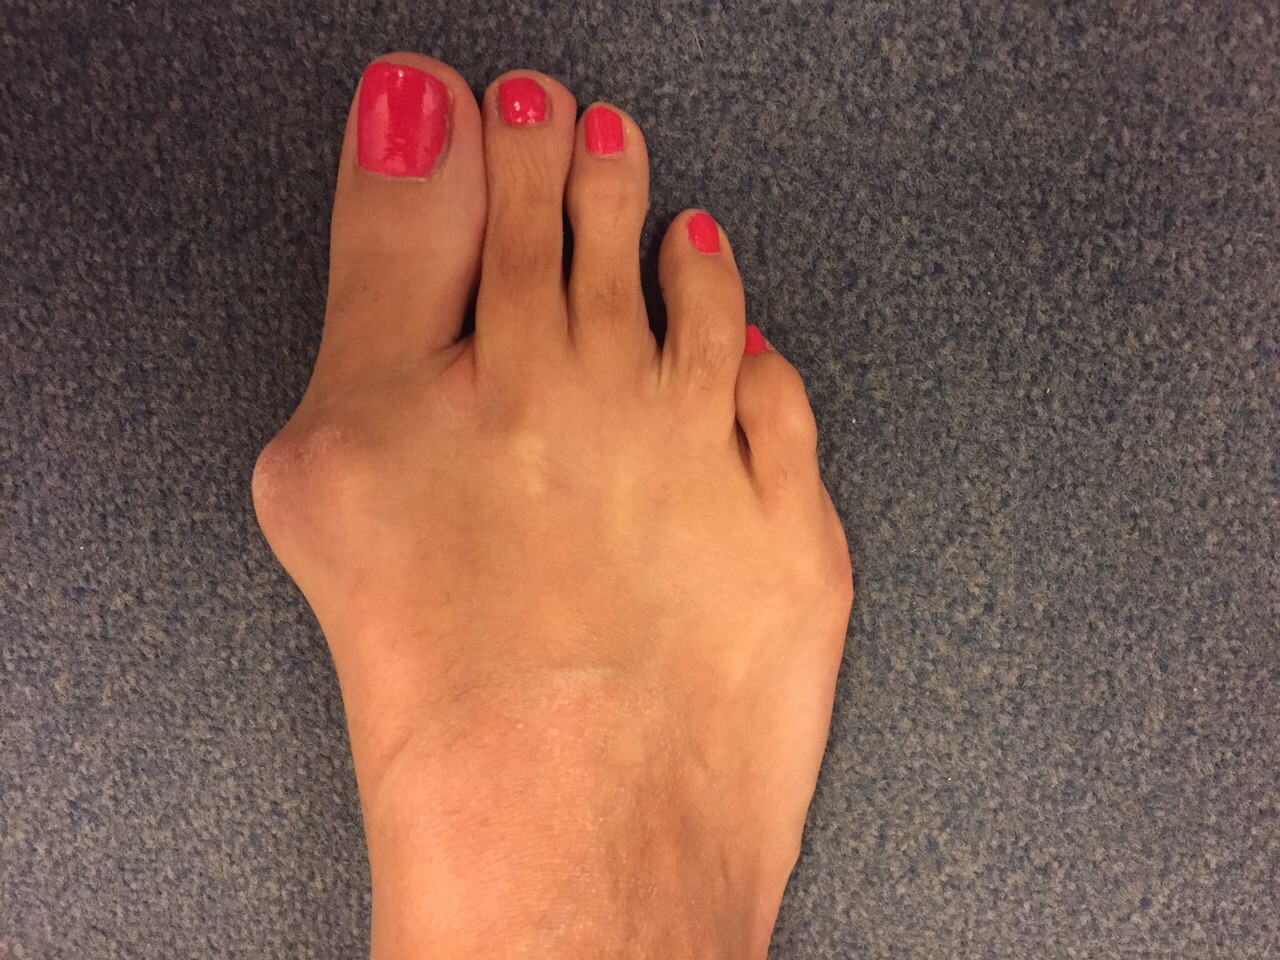 Пальцы на ногах картинки. Вальгусная деформация большого пальца стопы( hallux valgus. Hallux valgus 1 плюснефалангового сустава. Указательный палец на ноге.